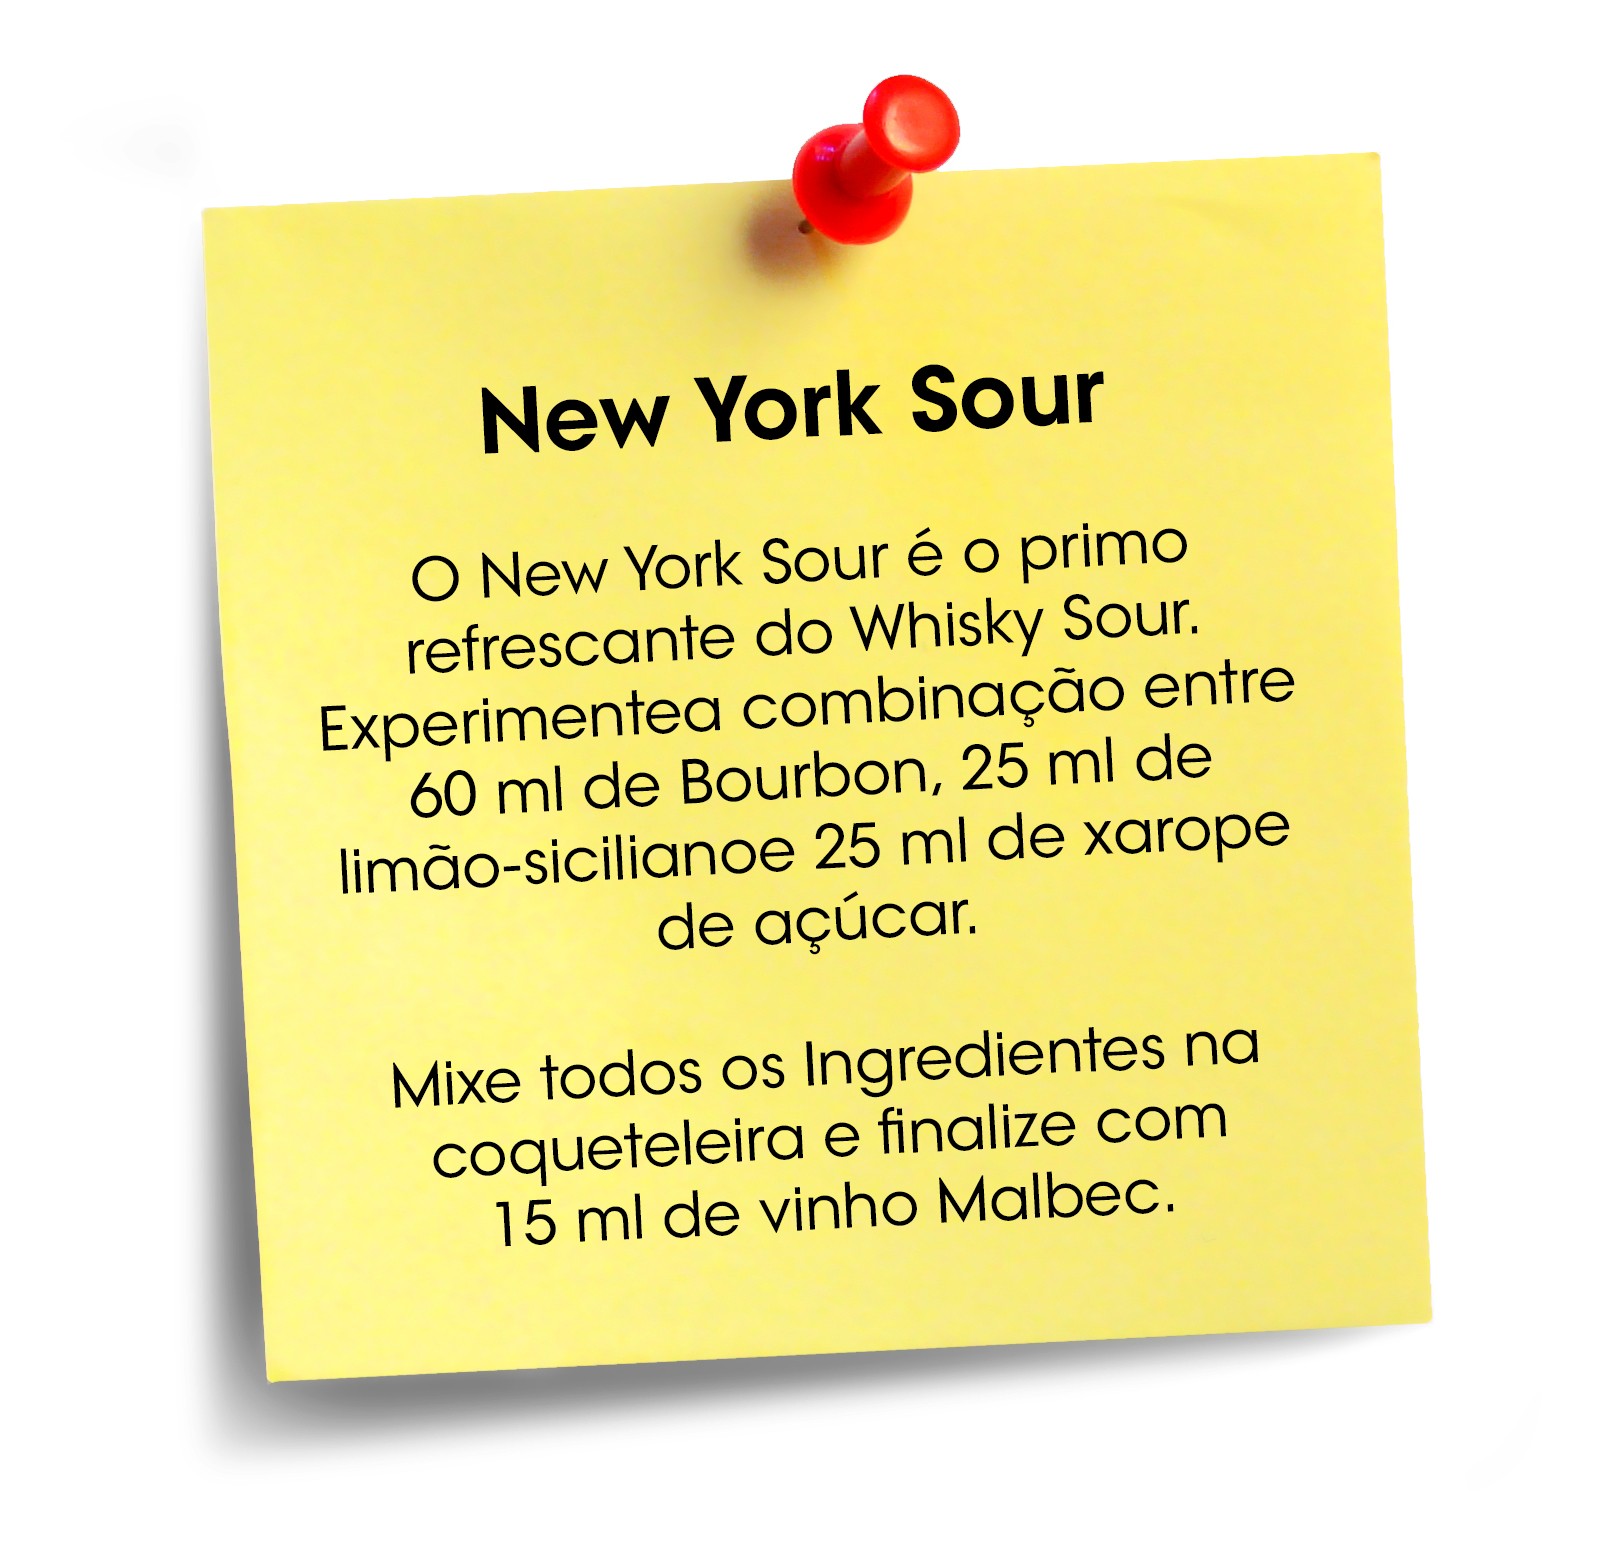  New York Sour (Foto: Reprodução)